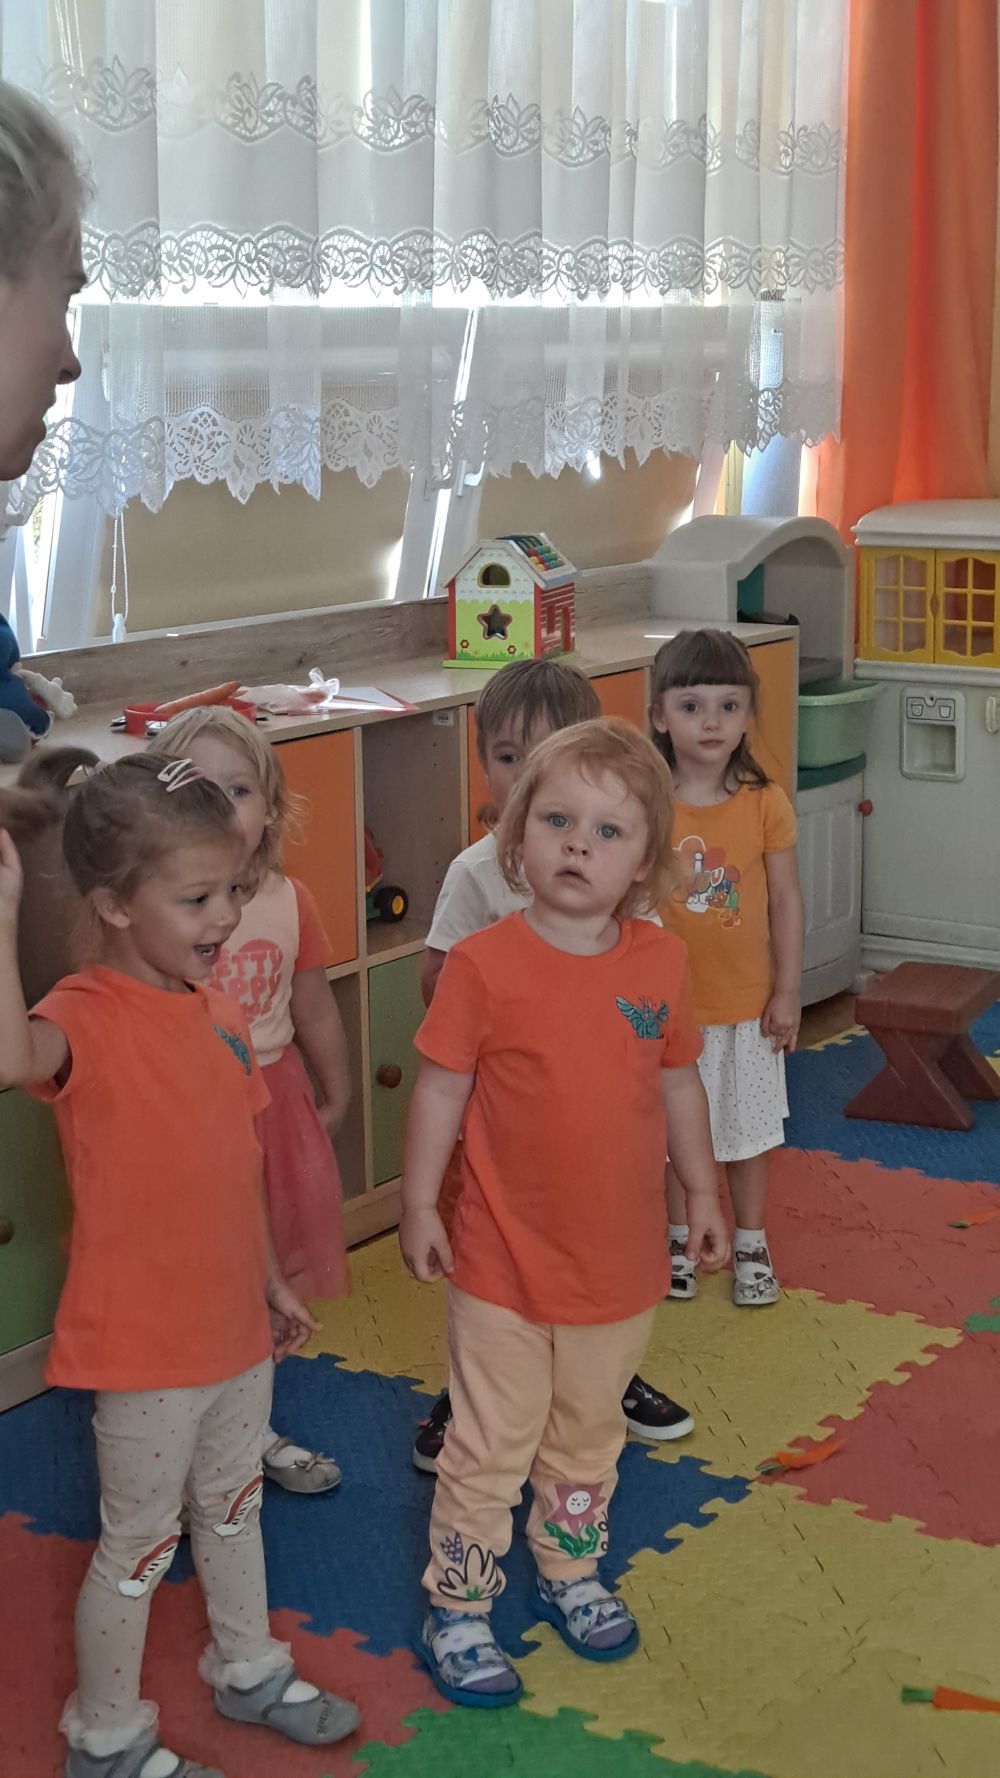 Dzieci stoją na dywanie ubrane na pomarańczowo